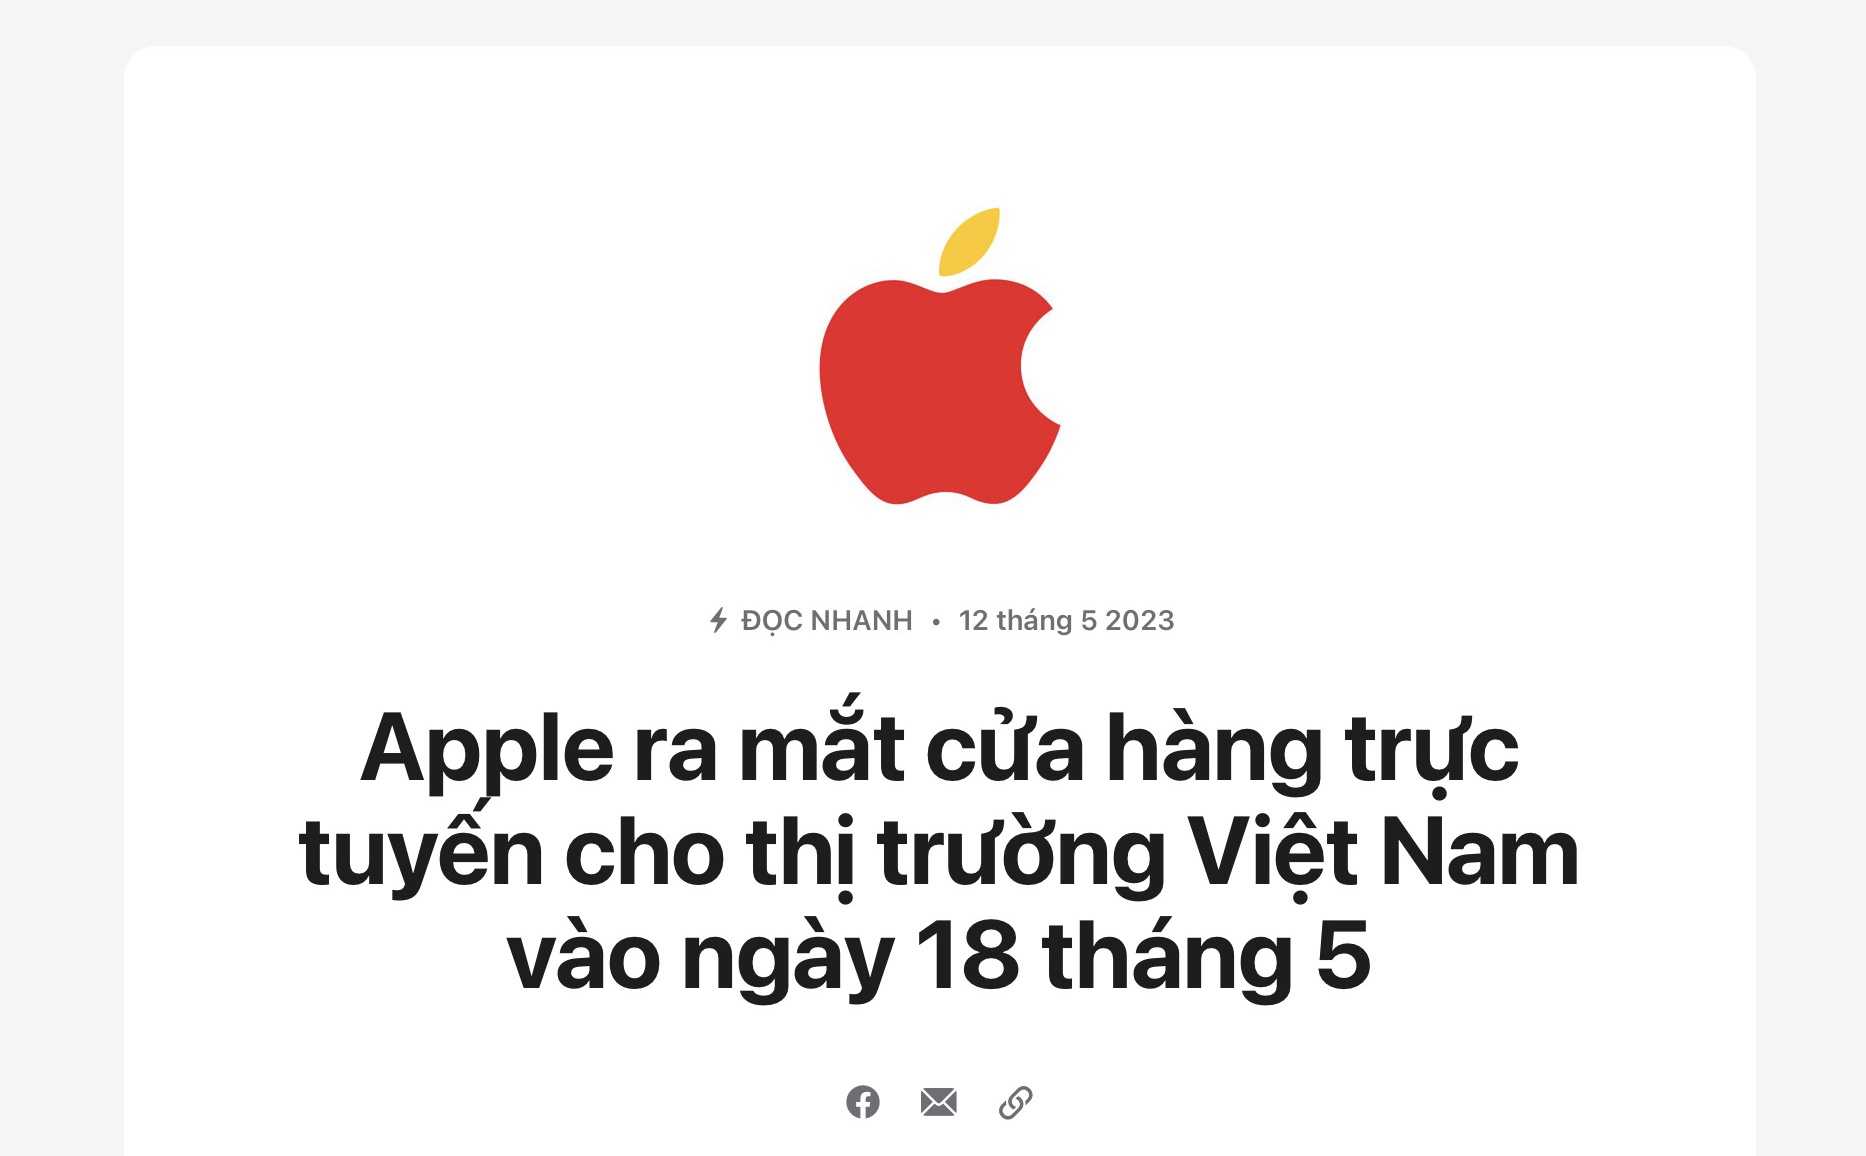 Chỉ một chi tiết trong thông báo mở cửa hàng ở Việt Nam, Apple khiến ai cũng phải ngả mũ trước sự tinh tế, tỉ mỉ - Ảnh 1.